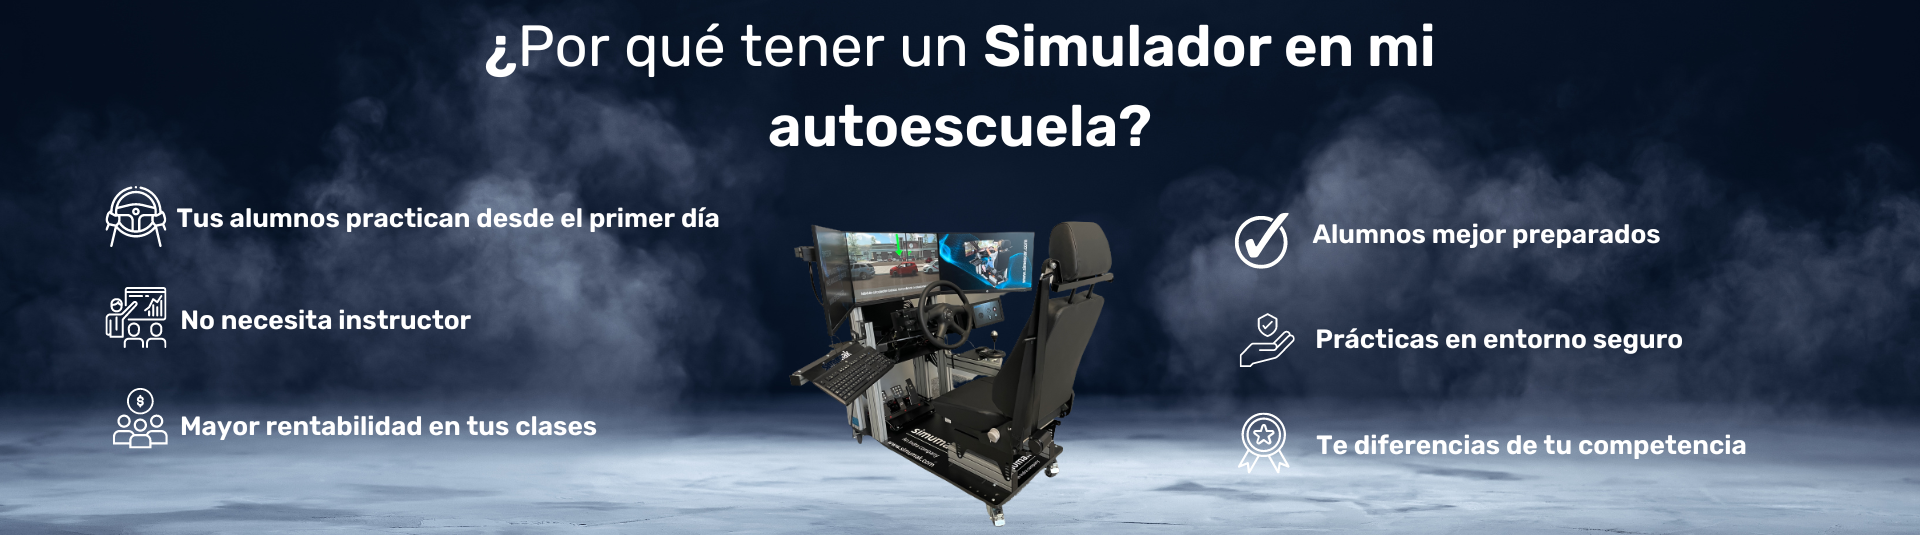 Simulador de conducción para autoescuelas